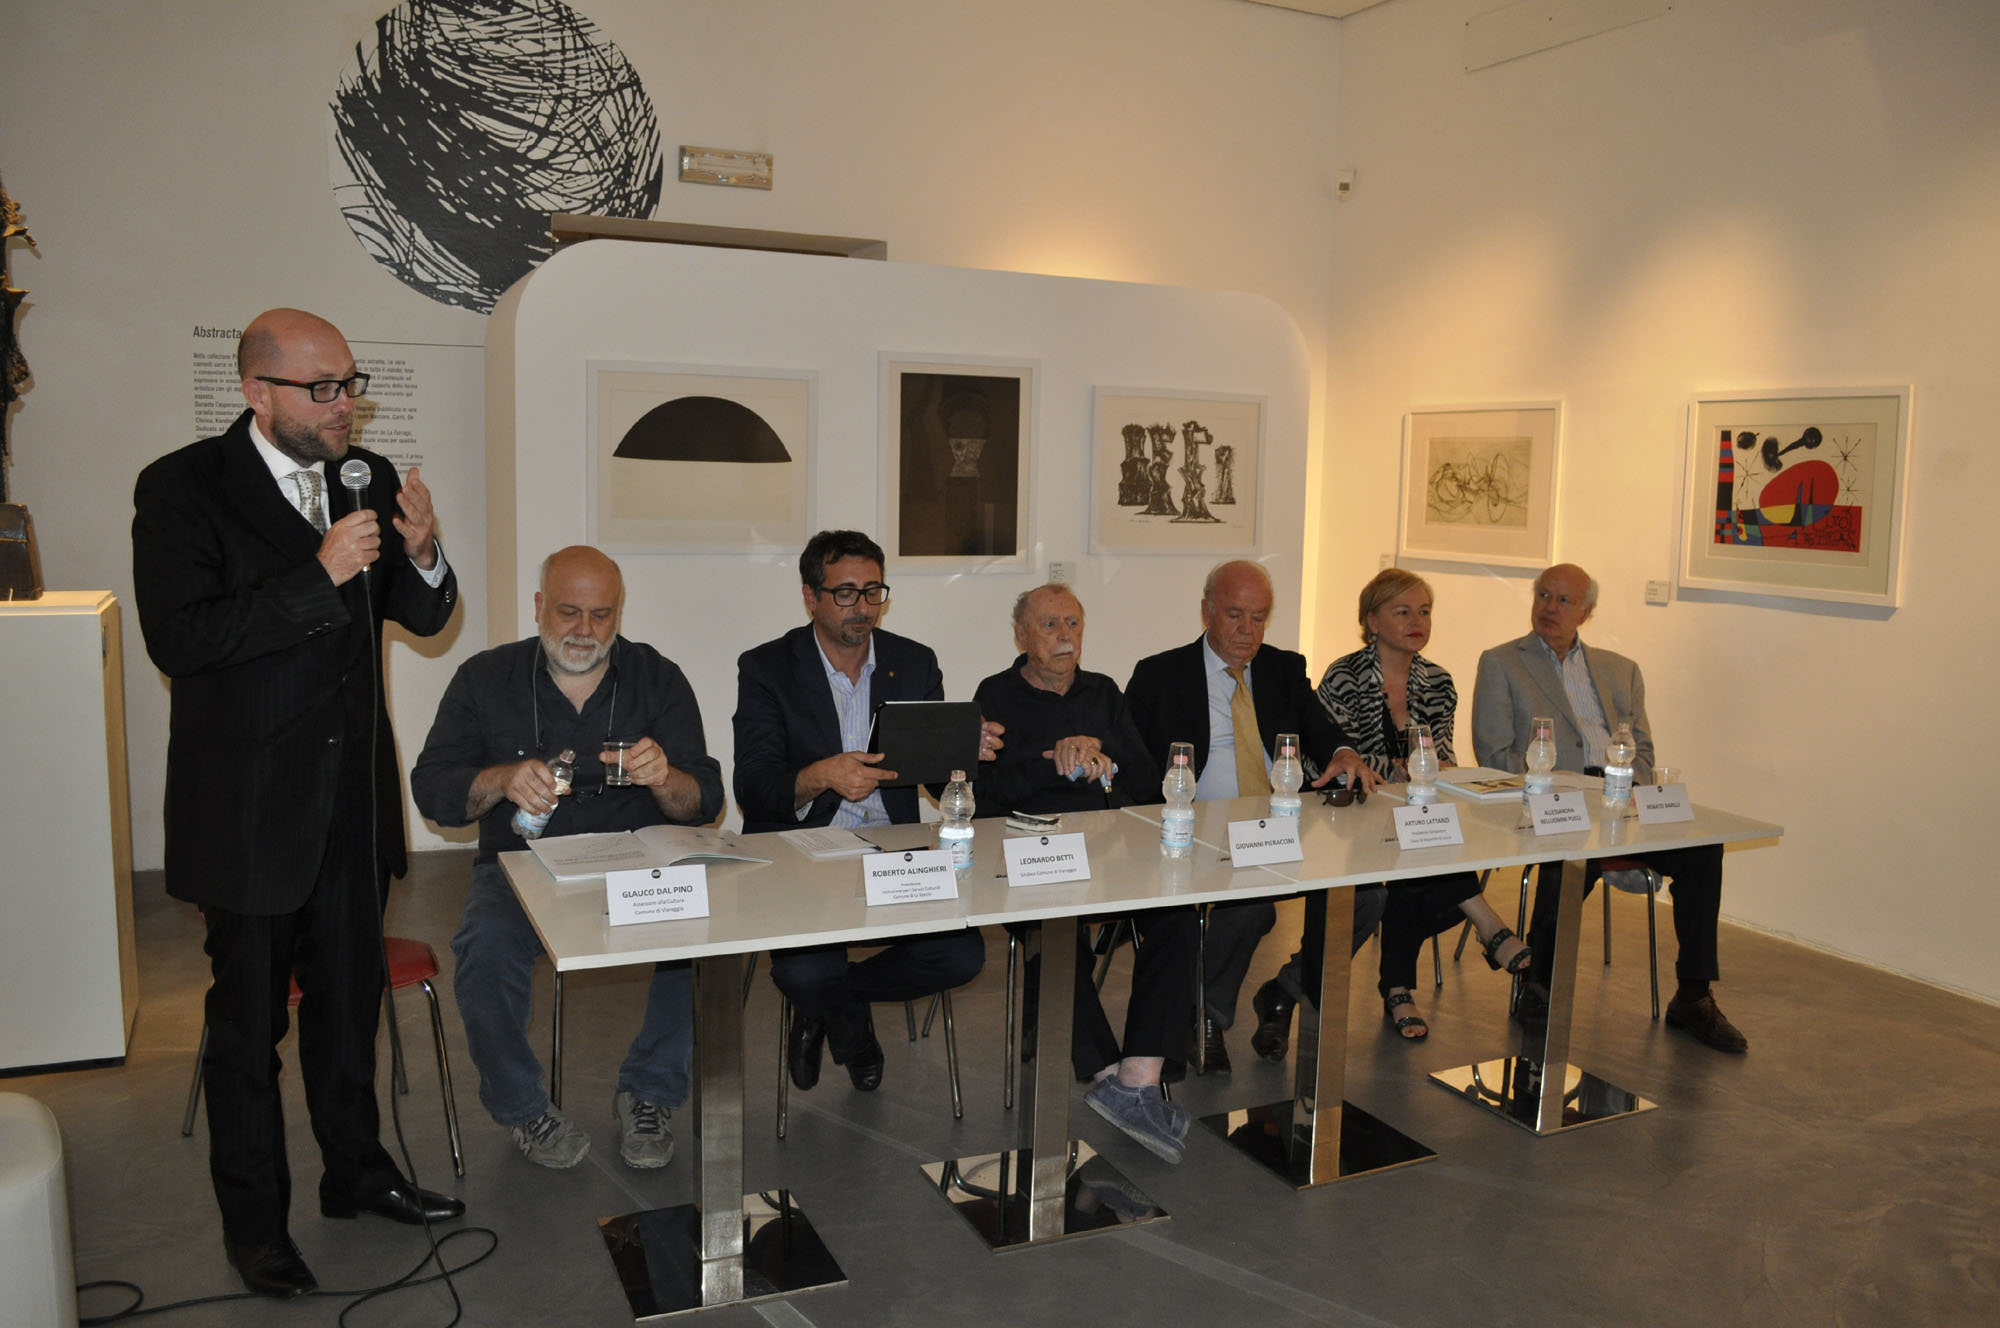 L’Espressionismo italiano di scena al GAMC Galleria d’Arte Moderna e Contemporanea di Viareggio. Inaugurata ieri la mostra “L’urlo dell’immagine”